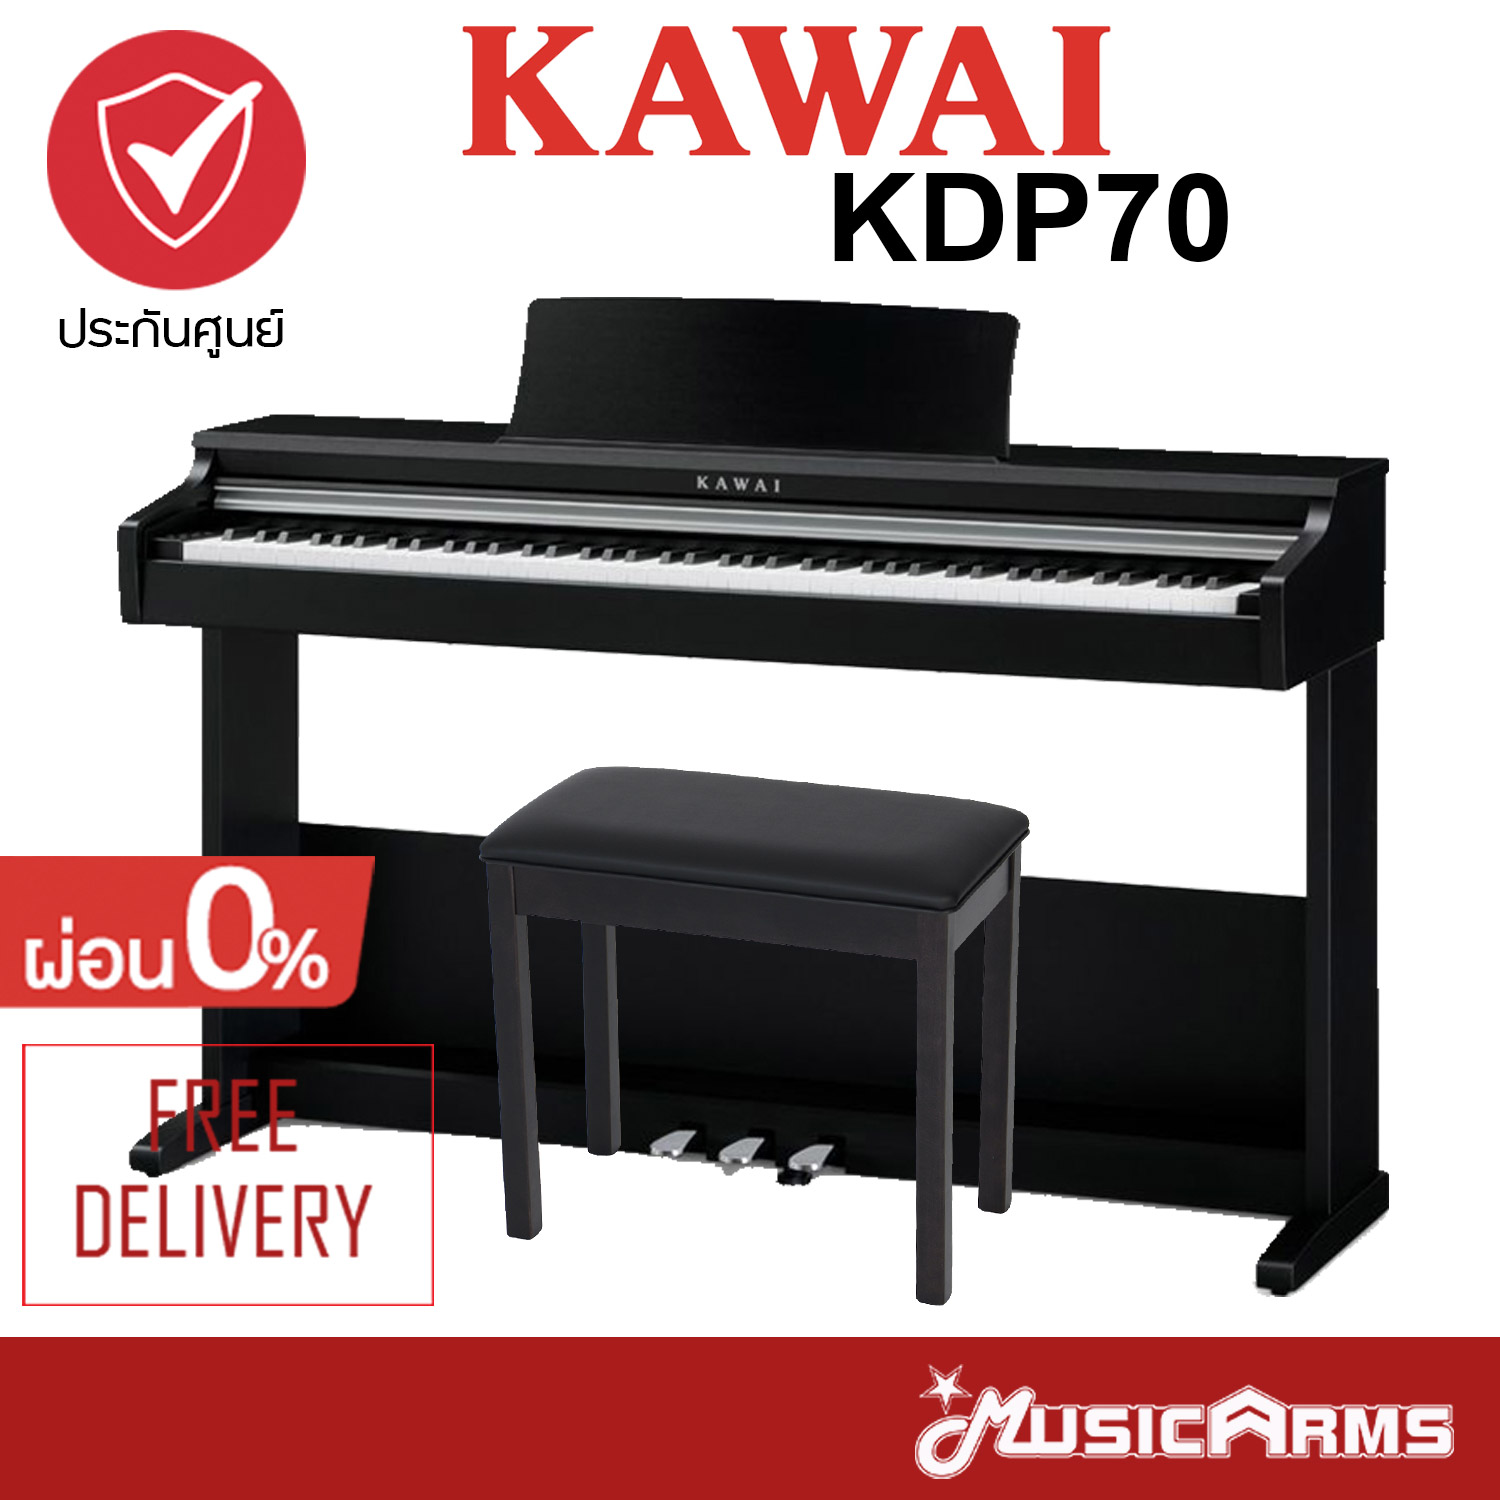 Kawai KDP70 ส่งด่วน ติดตั้งฟรี ฟรีไฟล์คู่มือภาษาไทย ประกันศูนย์ 3ปี เปียโนไฟฟ้า Music Arms